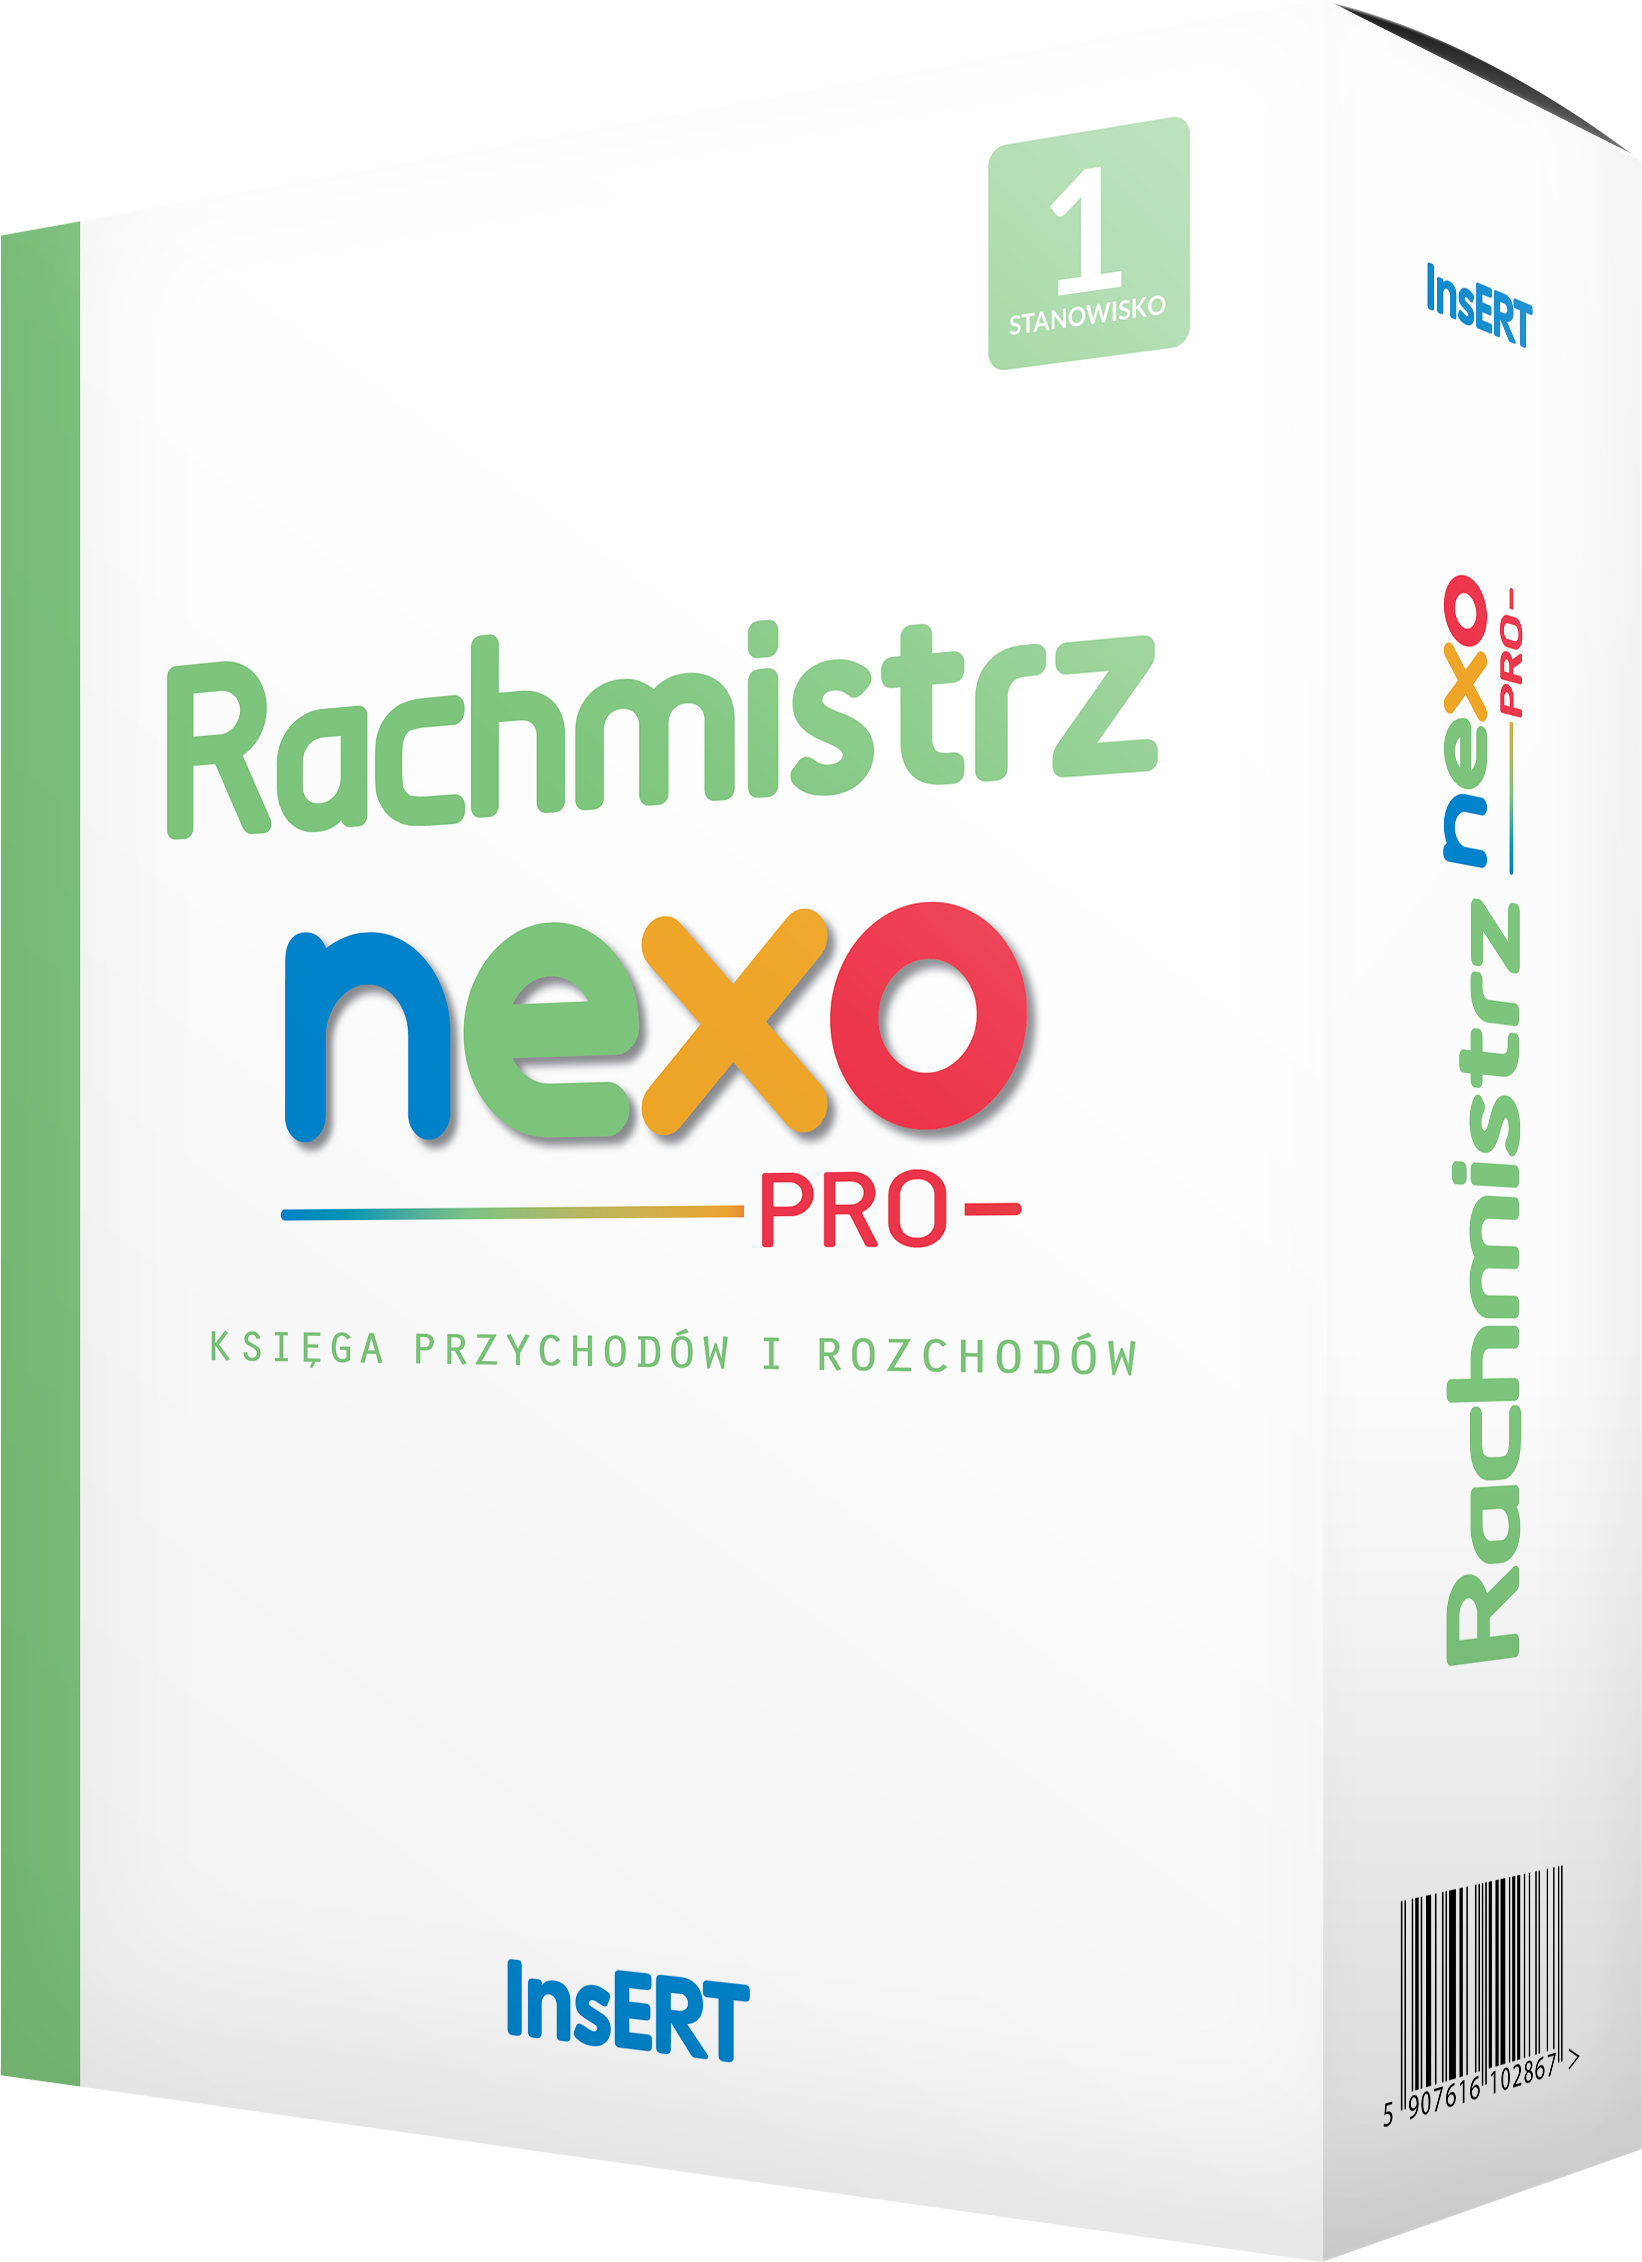 Zestaw Rachmistrz nexo PRO 20 podmiotów upgrade z GT + rachmistrz nexo pro krok po kroku